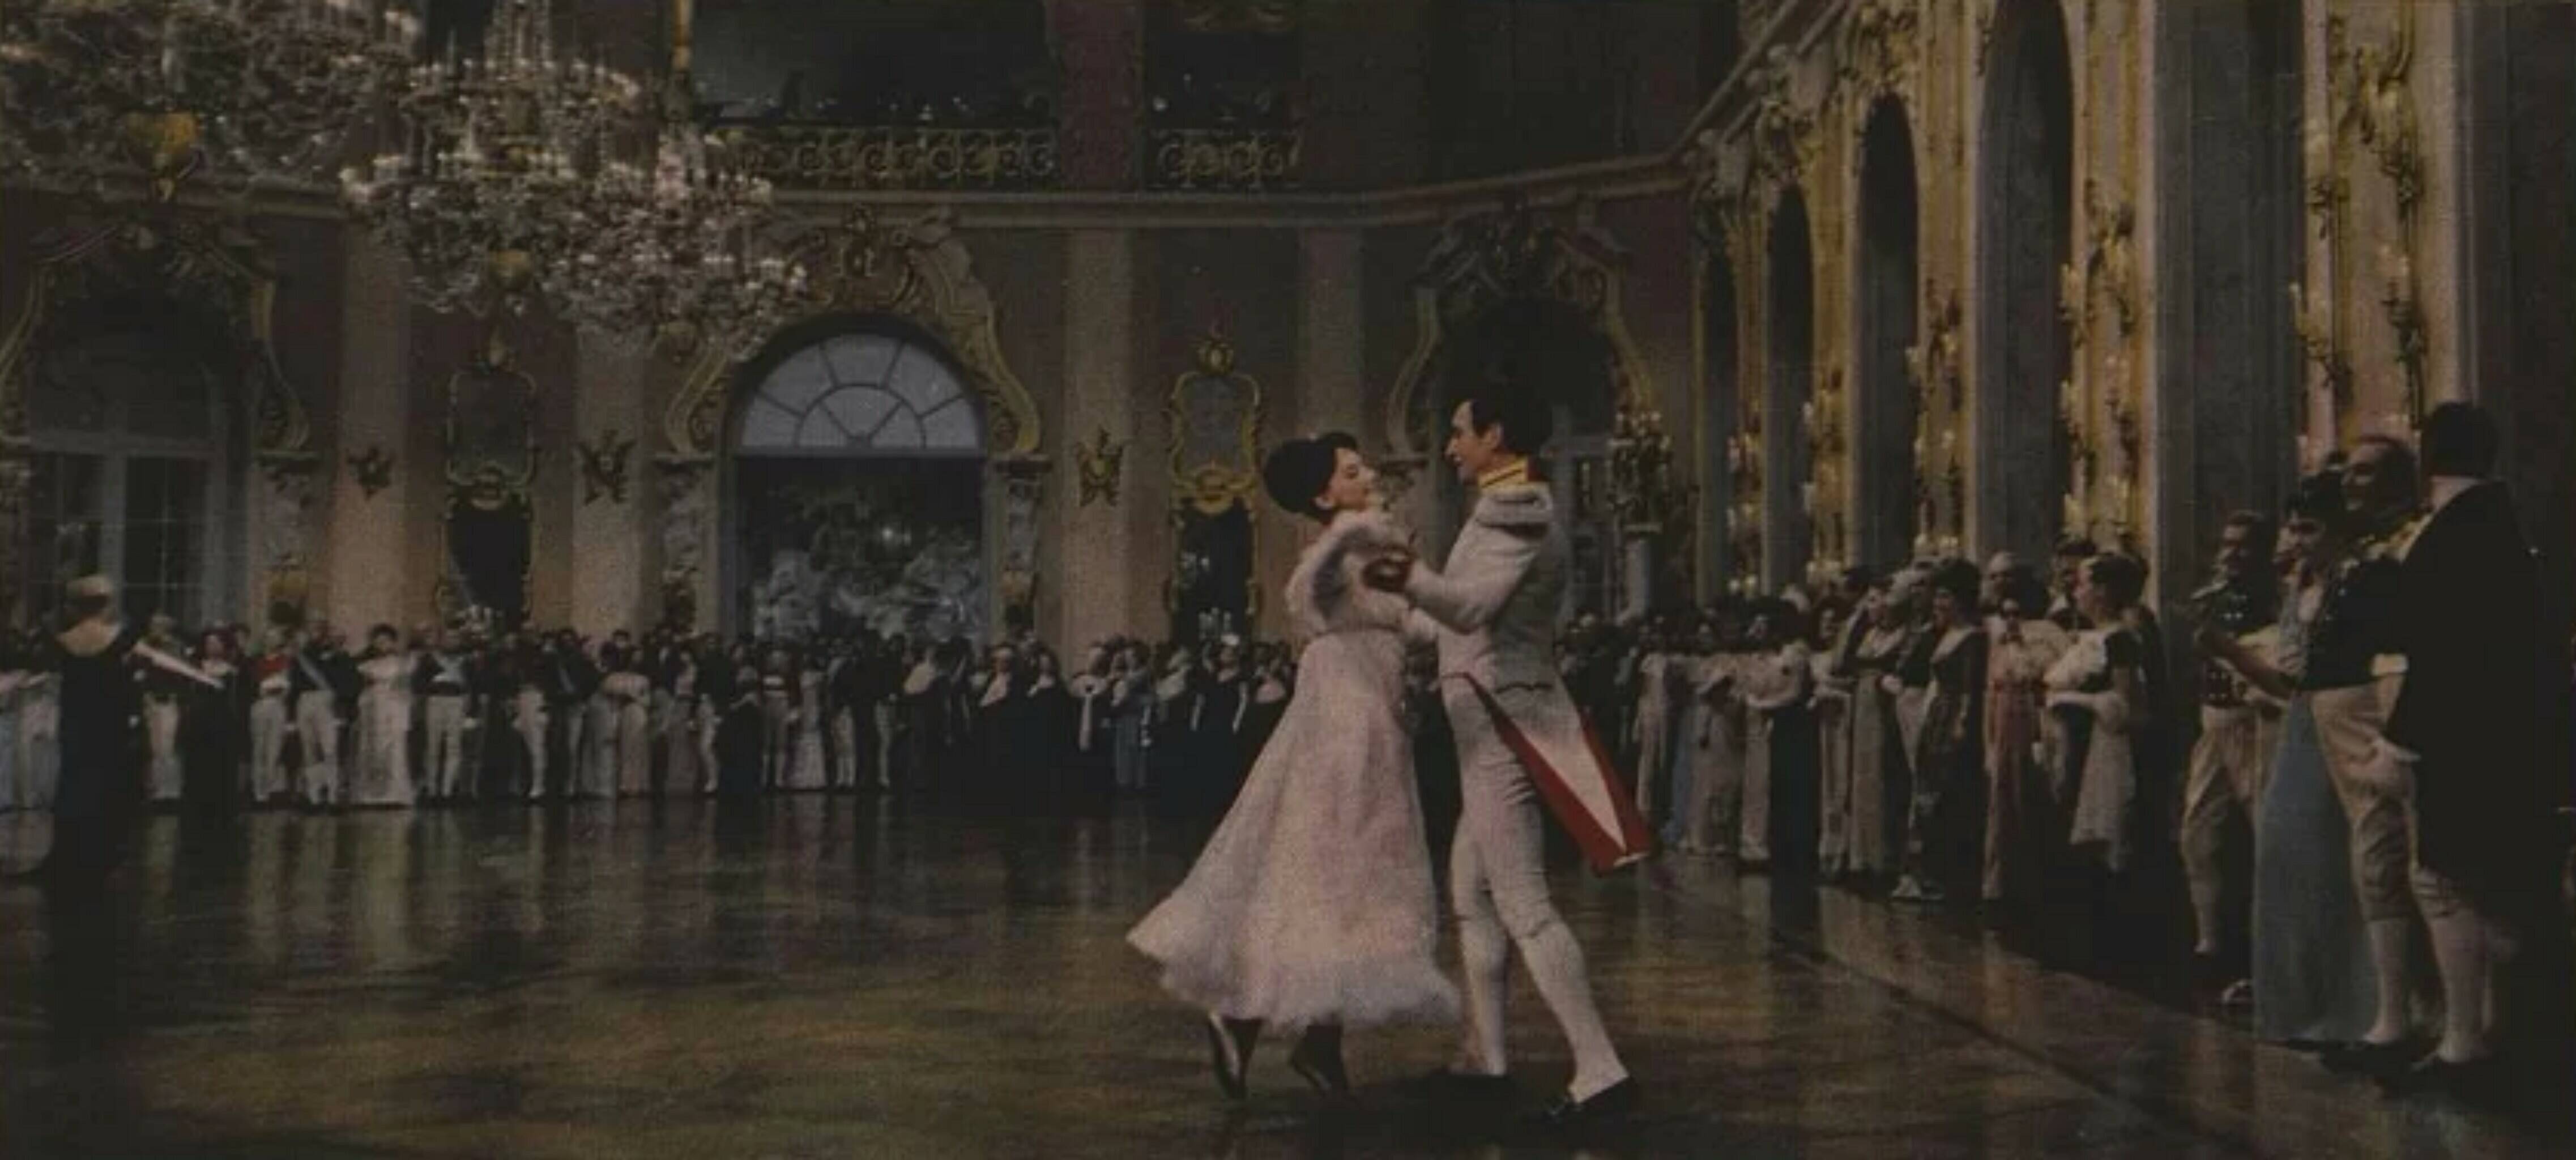 Этикетка из серии "Театры, балет, народные танцы, цирк". 1950-1970-е гг. Государственный Исторический Музей